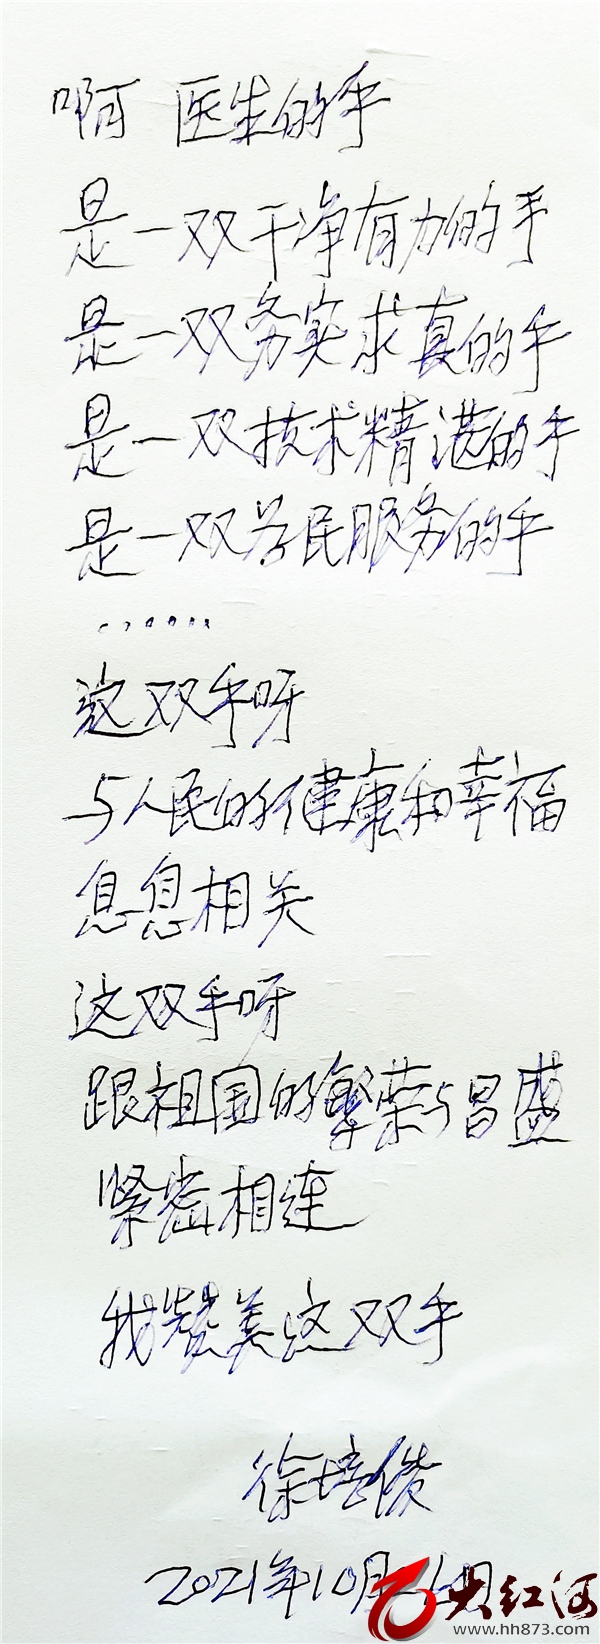 85岁老者徐培俊写诗赞医生  医患关系原来可以如此美好